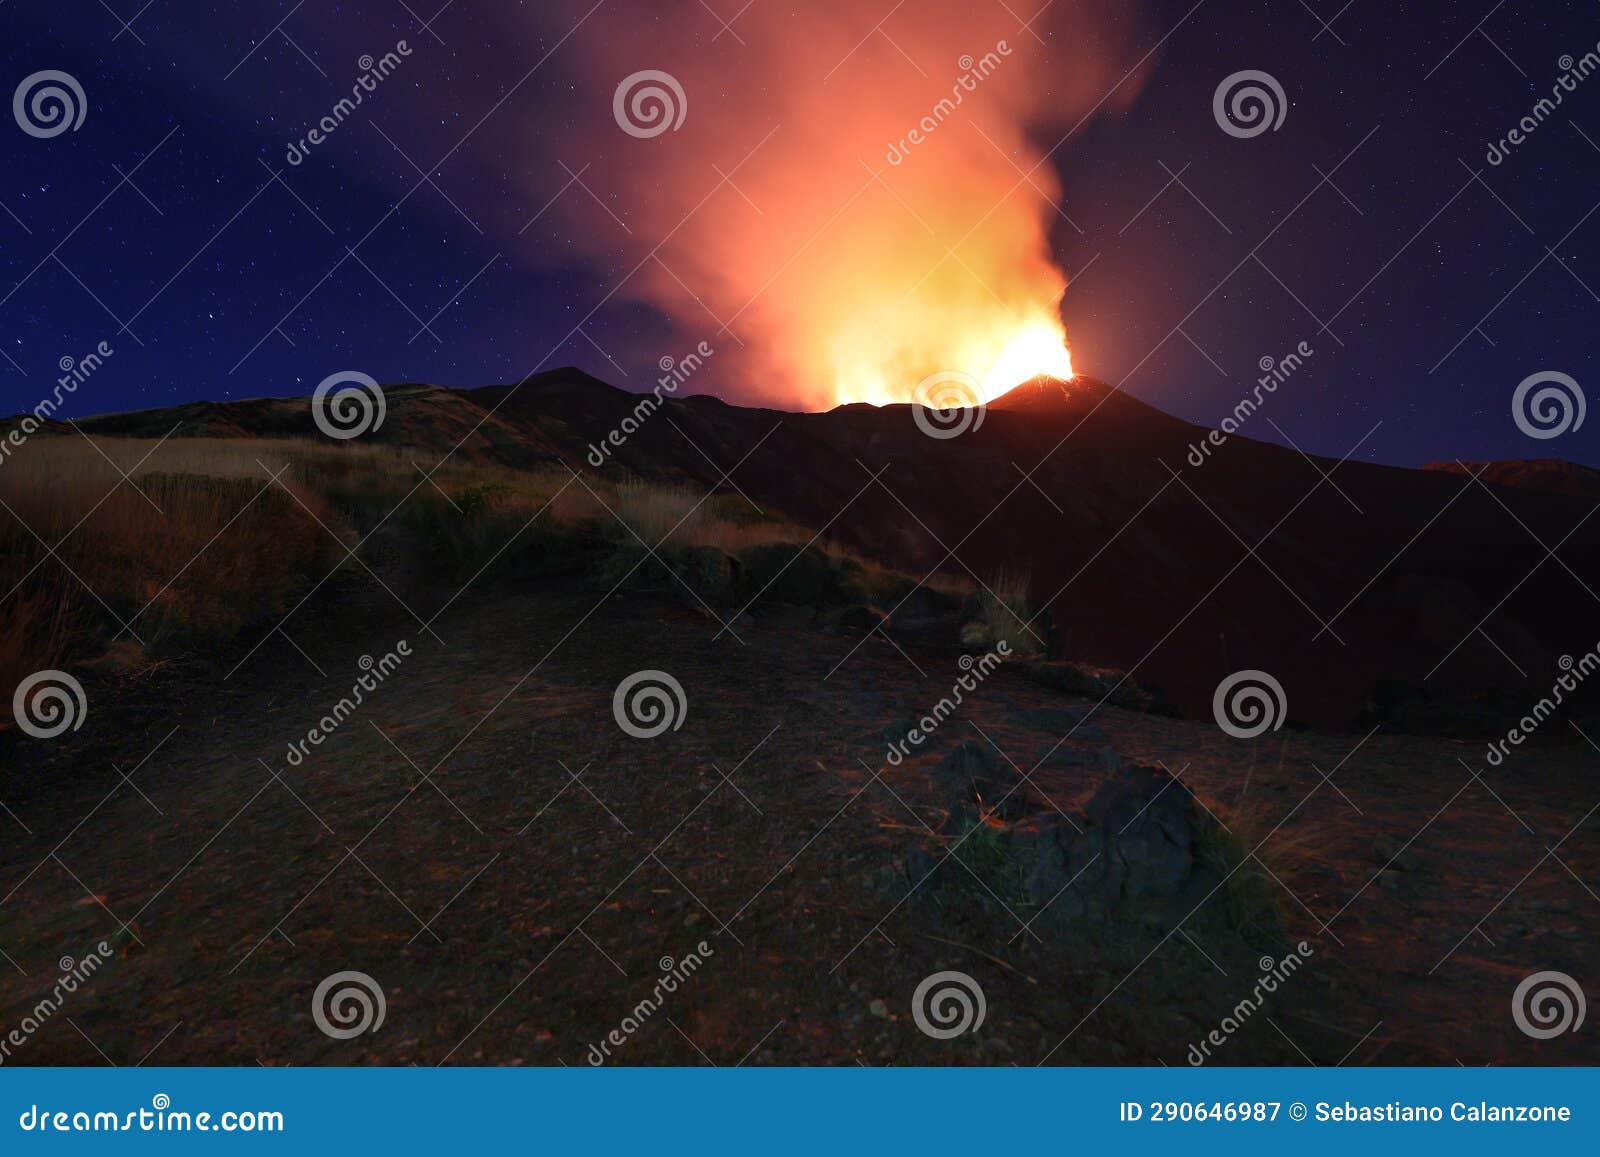 suggestiva eruzione del vulcano etna con esplosione di lava dalla cima del cratere con sfondo il cielo stellato e paesaggio